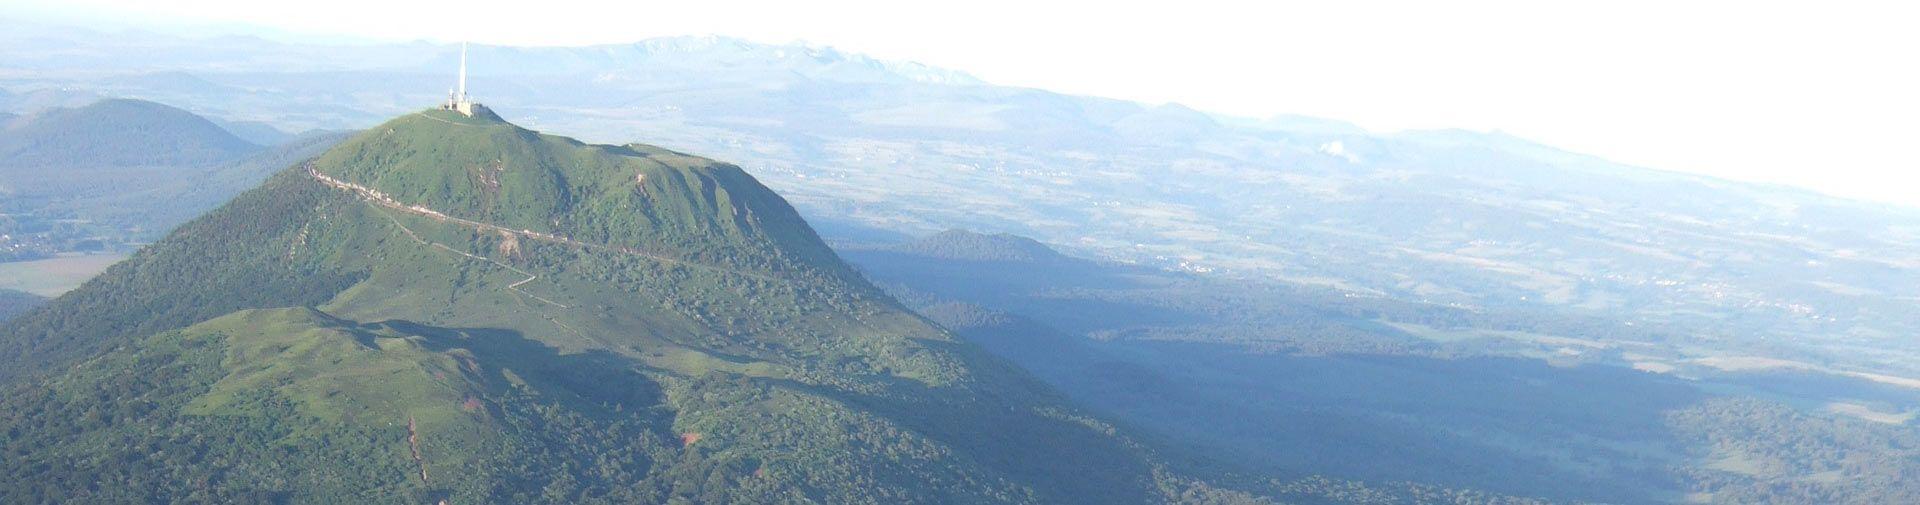 Le plus haut volcan de la Chaîne des Puys-faille de Limagne à 1 465 m d&#039;altitude, haut lieu tectonique inscrit au Patrimoine Mondial de l’UNESCO depuis le 2 juillet 2018. Au sommet du puy de Dôme pour une découverte à 360° des volcans endormis de la Chaîne des Puys et de la Faille de Limagne, cet ensemble géologique témoin de la rupture des continents, unique au monde. - camping auvergne puy de dome